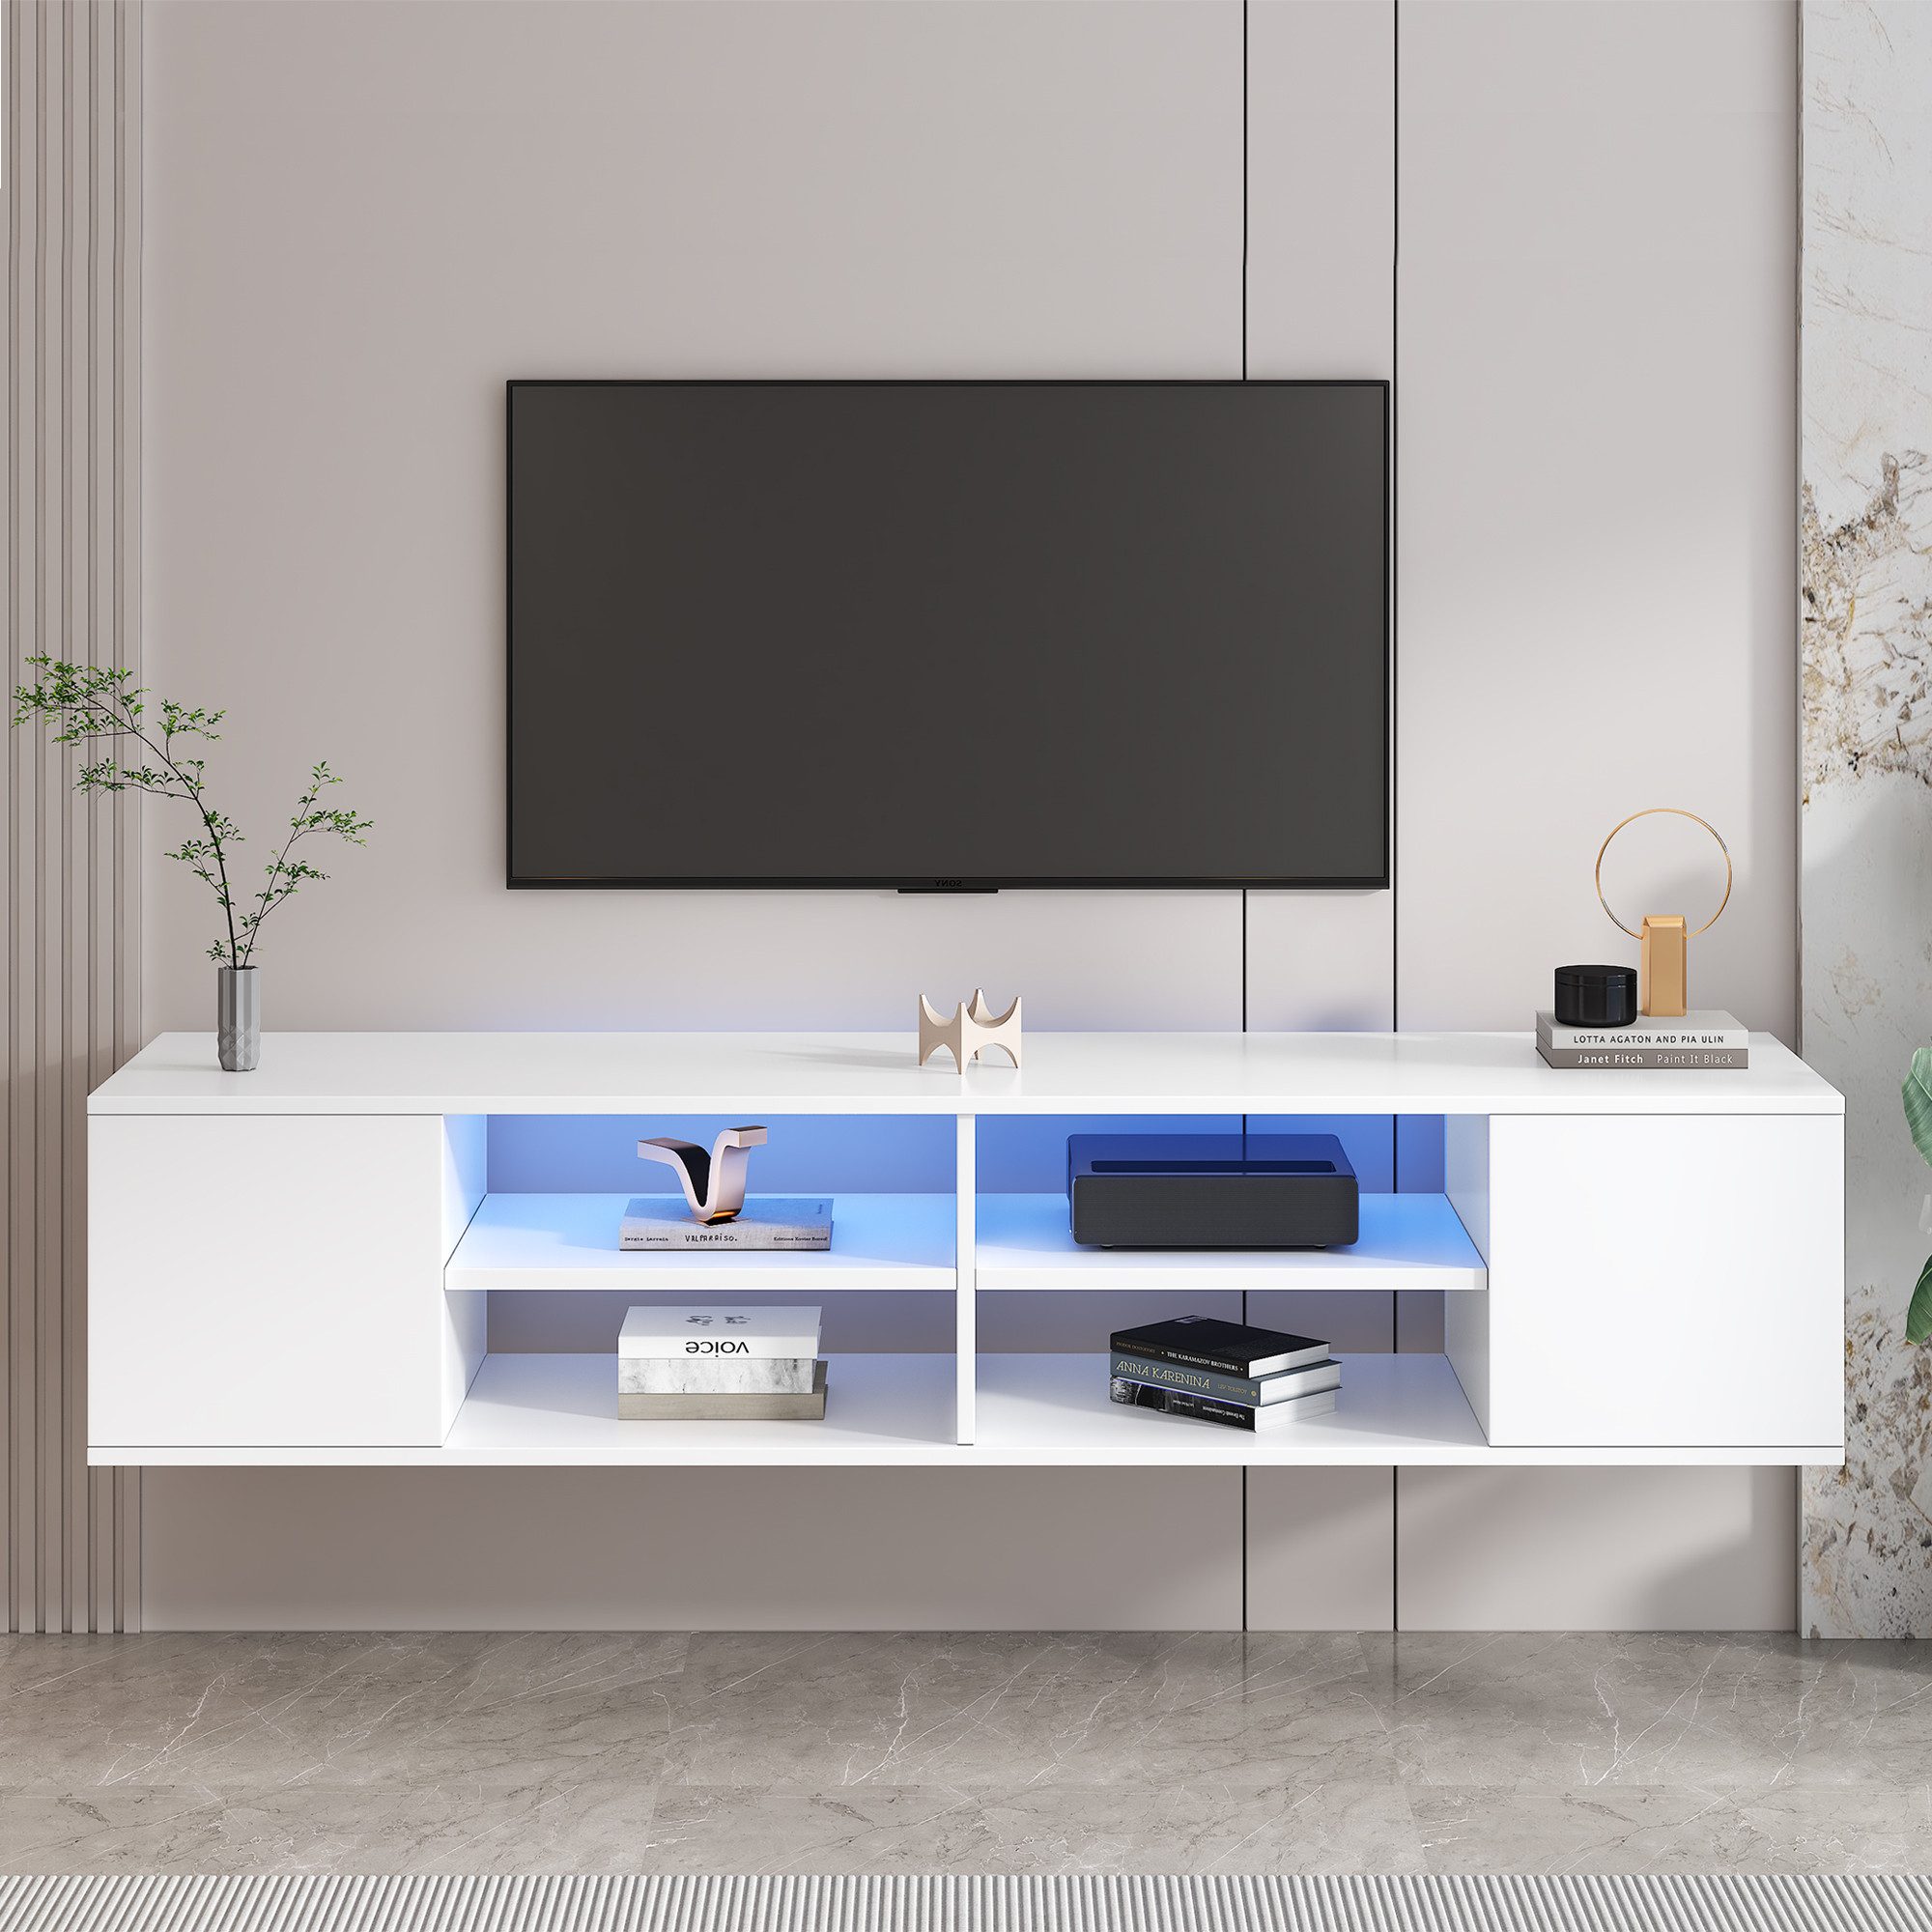 XDOVET TV-Schrank Vielseitiger 140cm Großer Weiß TV lowboard mit LED-Beleuchtung Stehend und Hängend mit Offene Ablagefächer an der Vorderseite